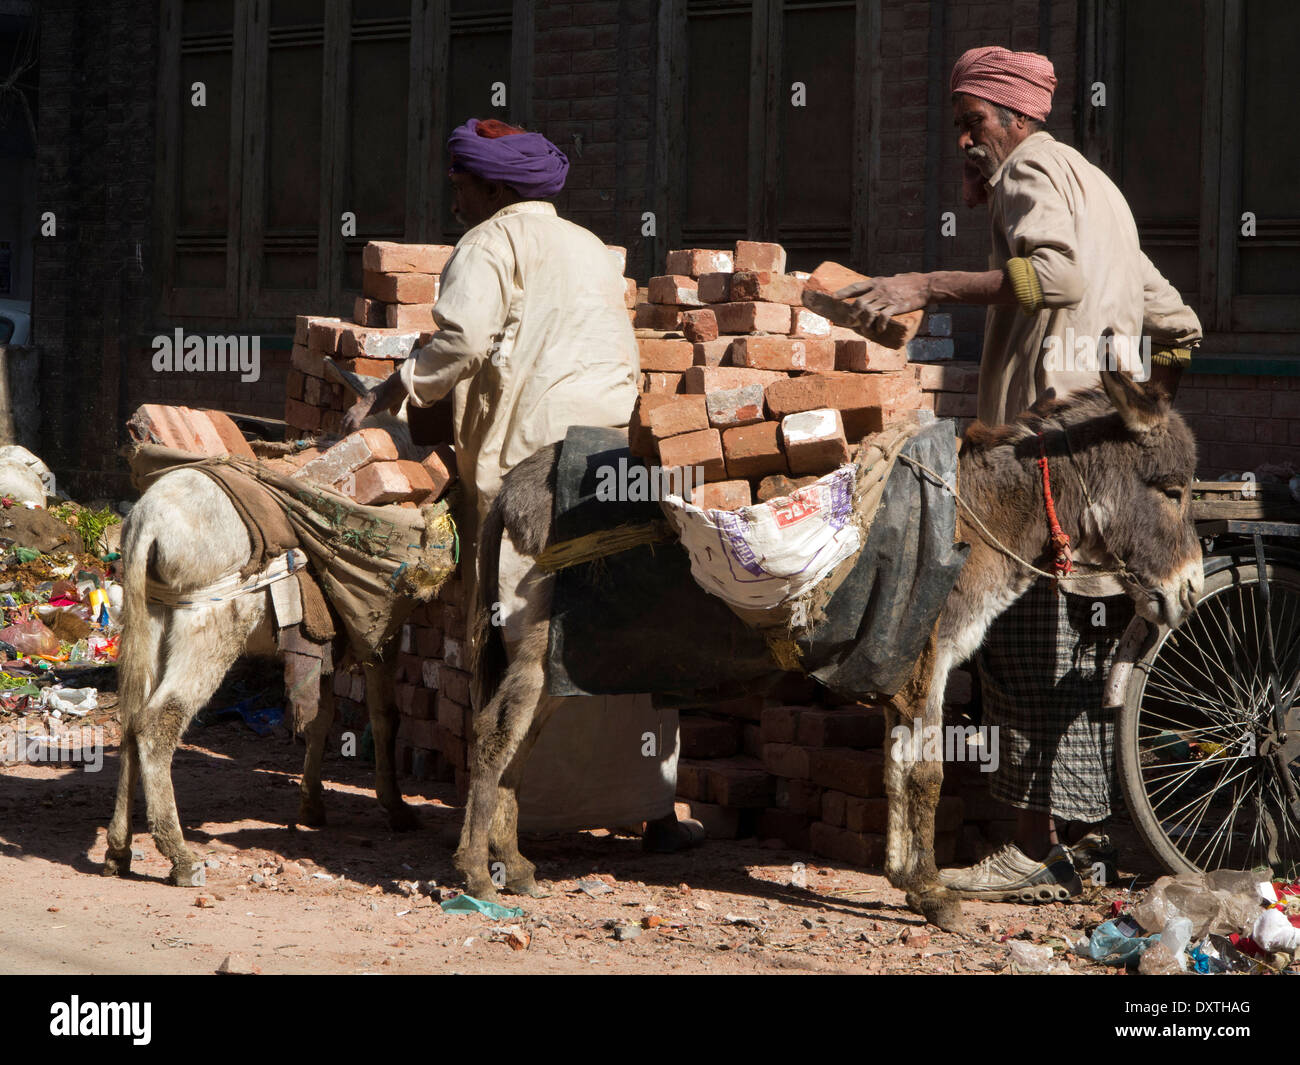 La India, Punjab, Amritsar, la crueldad hacia los animales, los burros están sobrecargados con ladrillos en bolsas Foto de stock